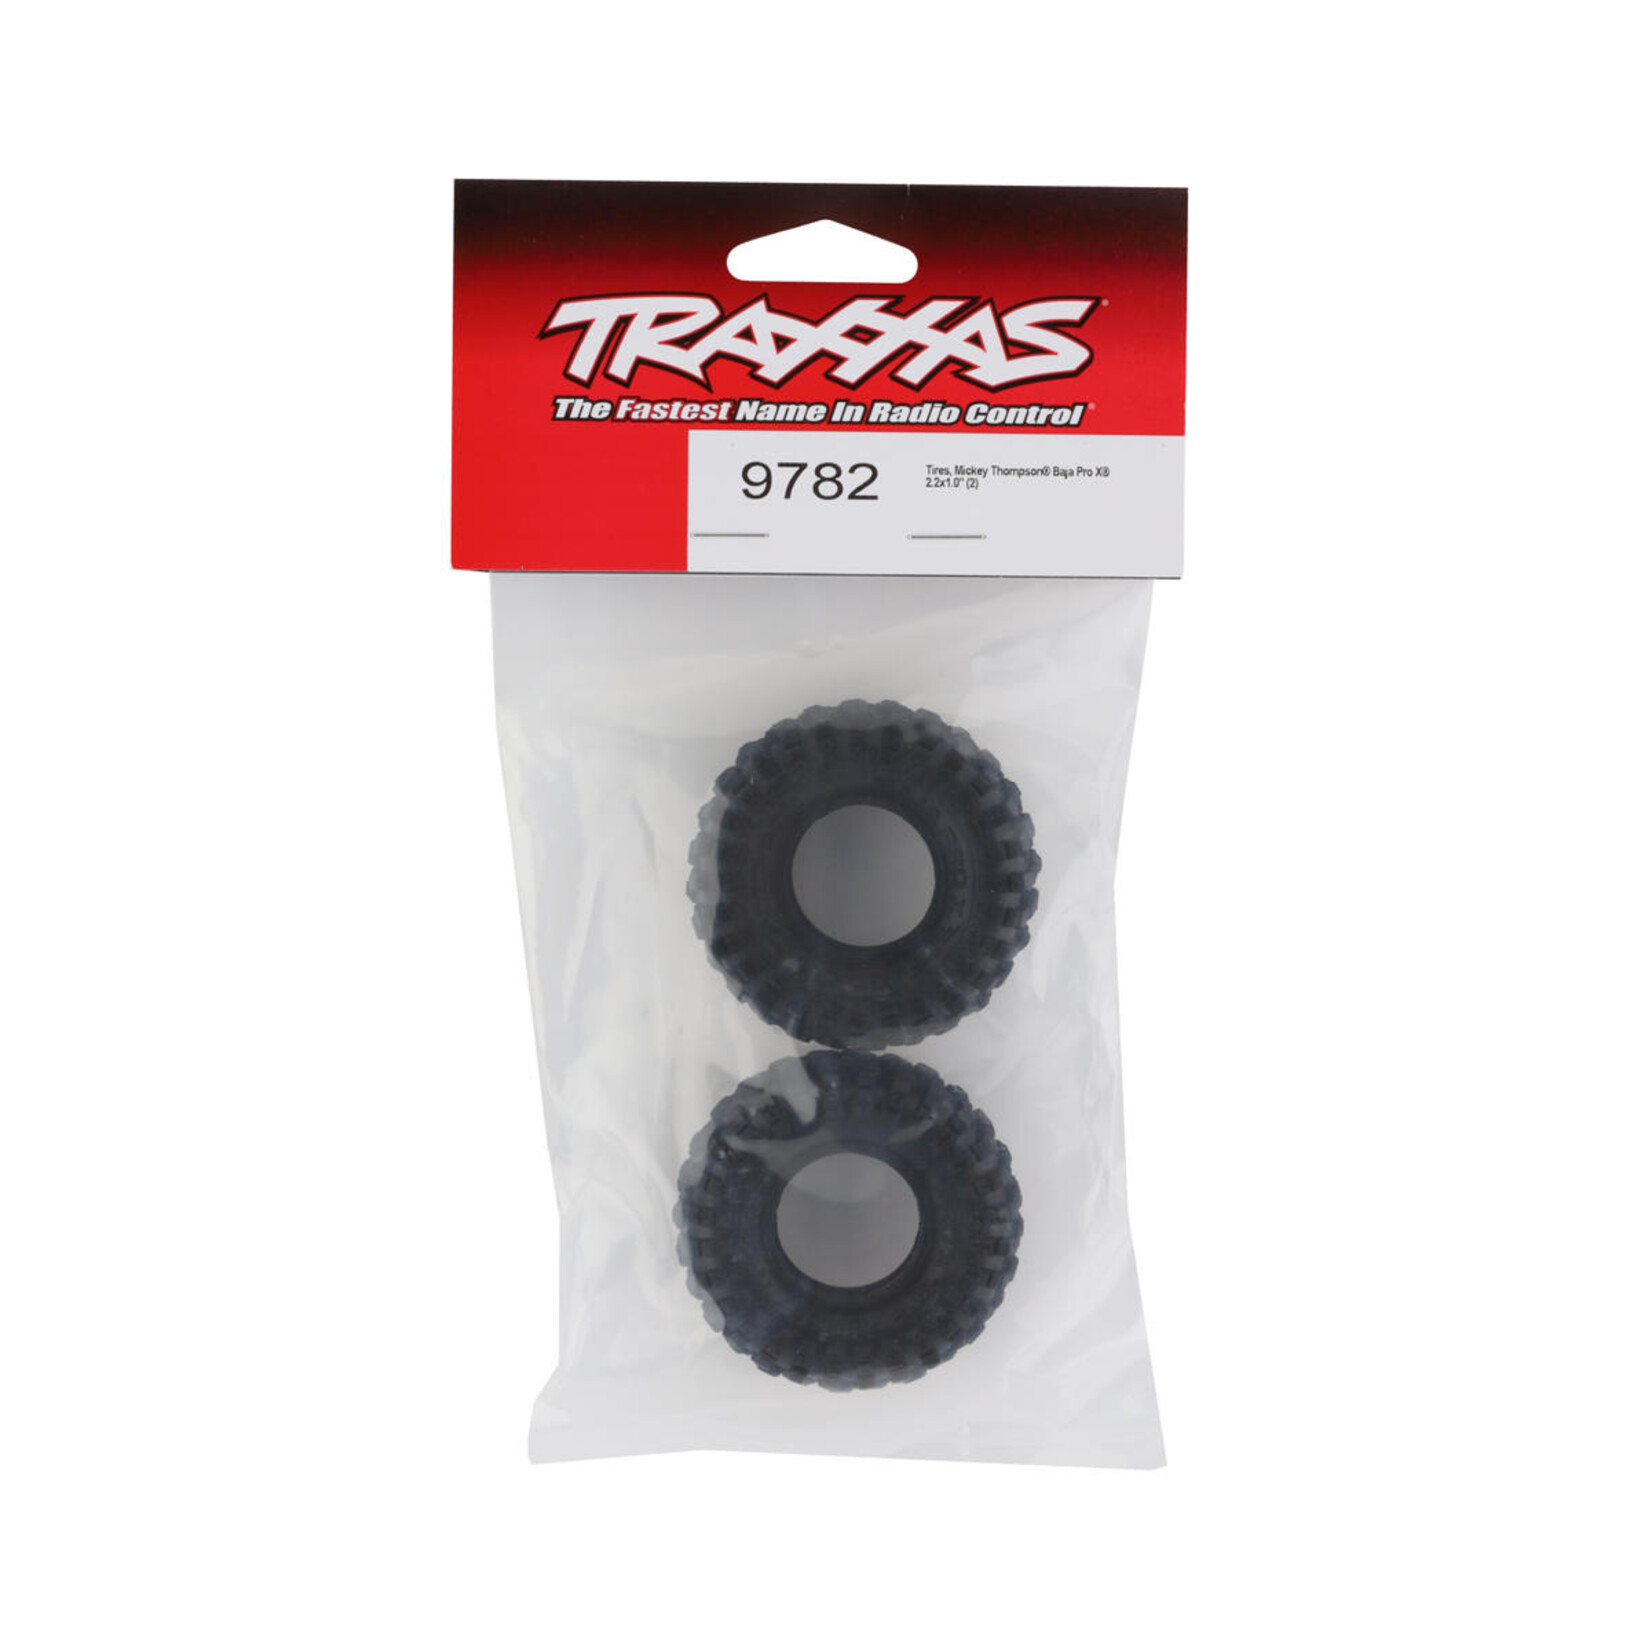 Traxxas Traxxas Mickey Thompson Baja Pro X 1.0" Micro Crawler Tires (2) #9782